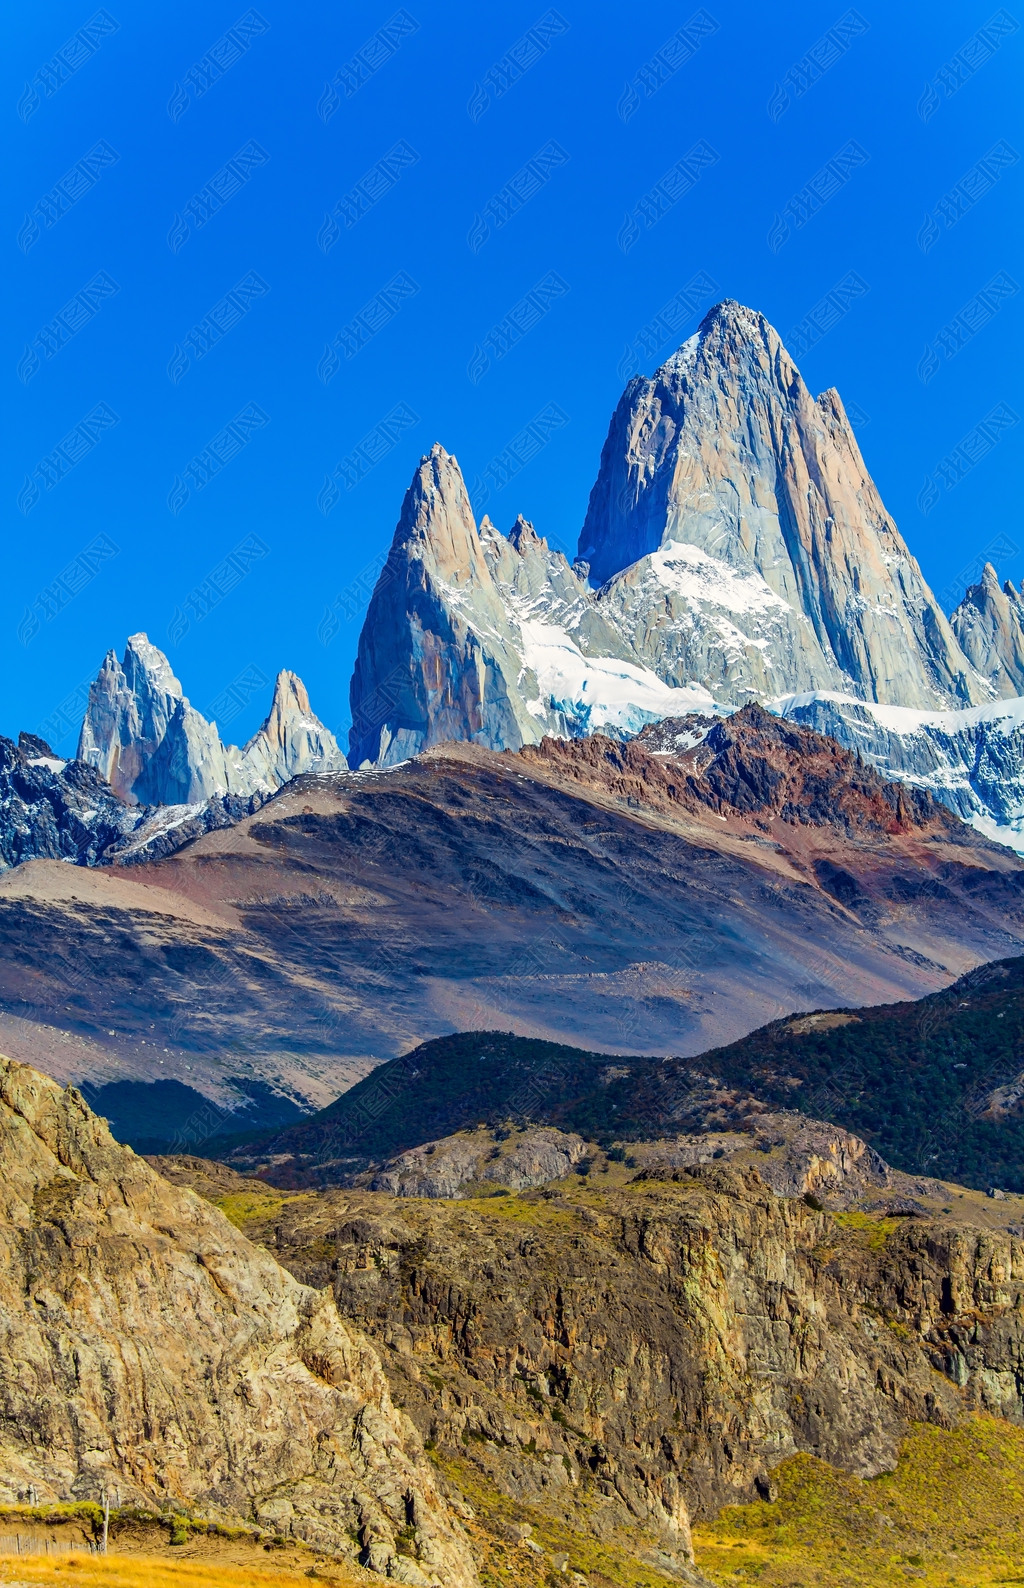 菲茨罗伊峰或chaltel峰阿根廷和智利边境地区的一座山峰风景如画的